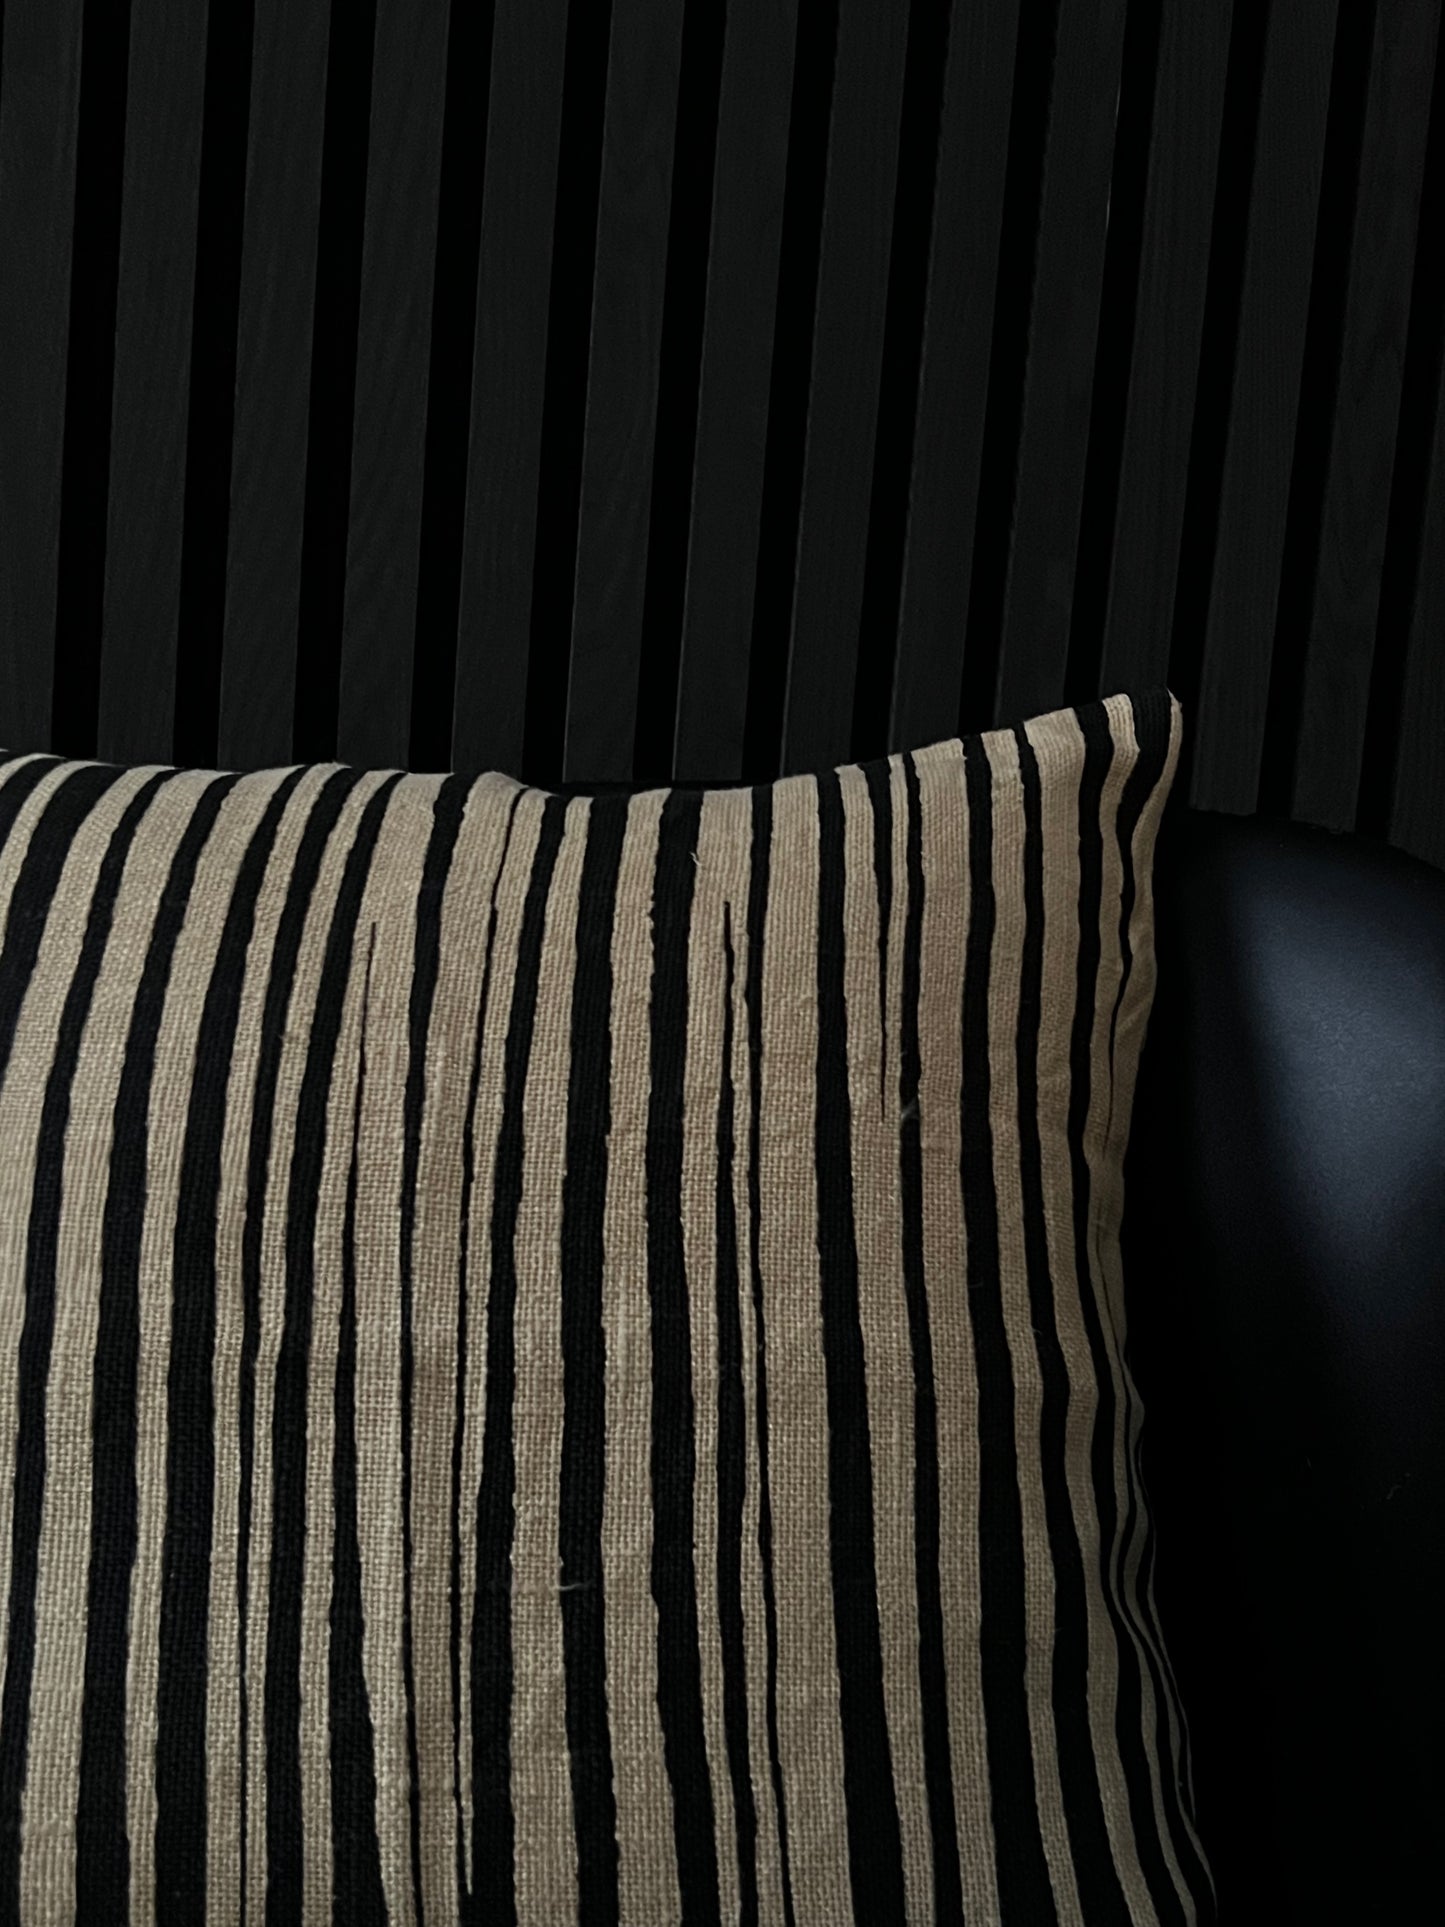 Ett vackert kuddfodral i 100% linne från Chhatwal & Jonsson. Kuddfodralet har asymmetriska ränder och en rustik struktur som man med lätthet kan piffa till soffan, fåtöljen eller stolen med. Kudden är beige och svart.